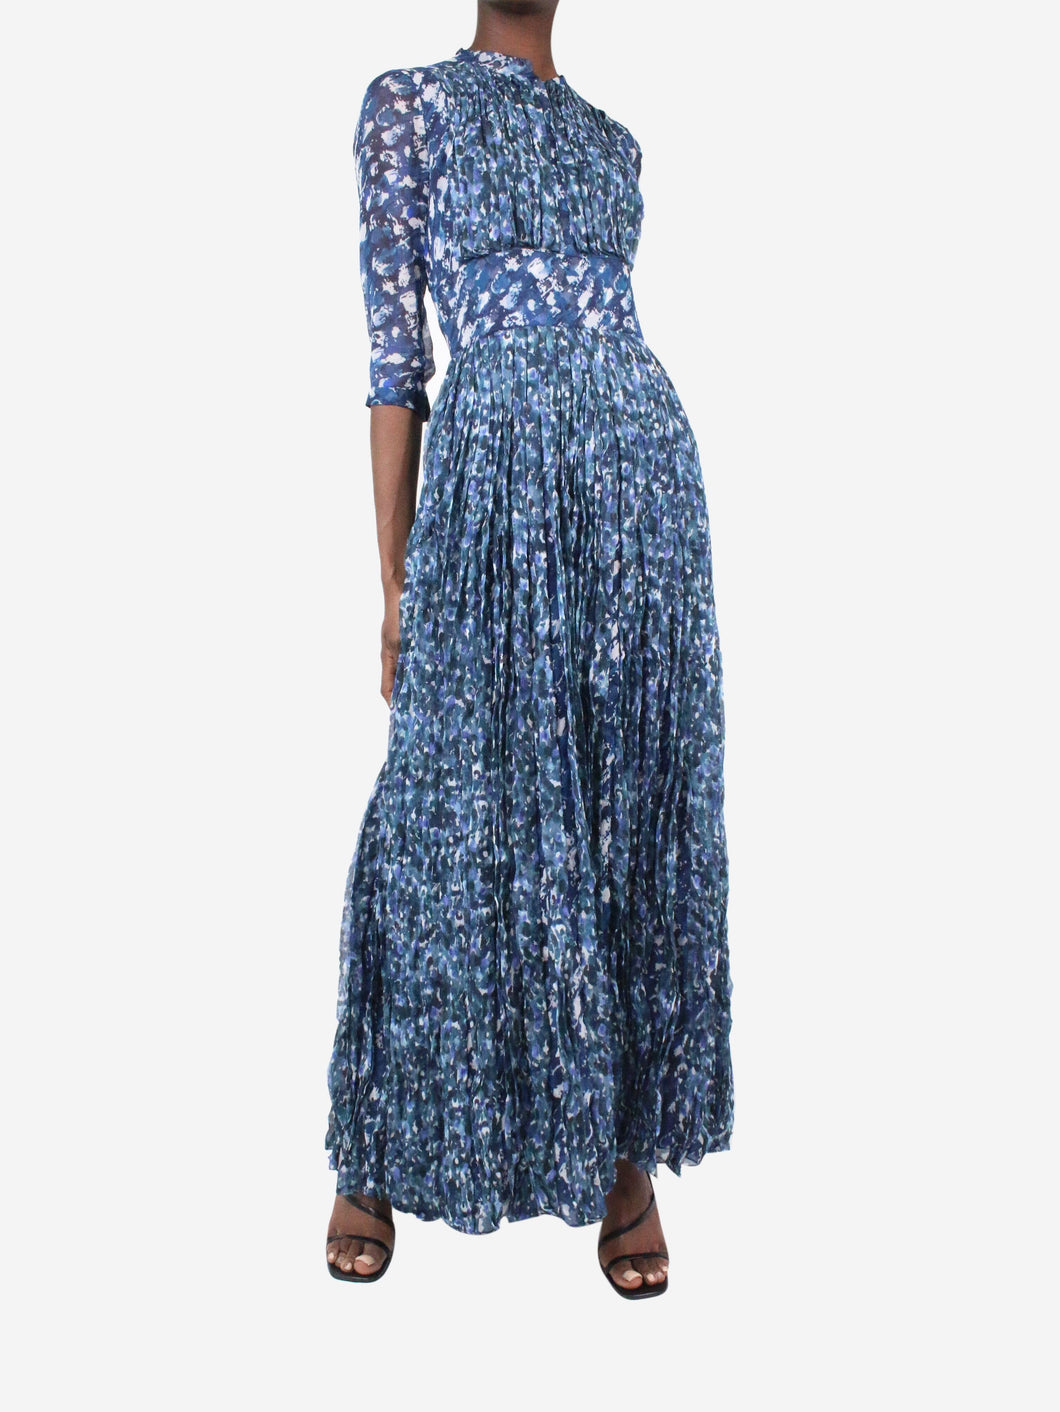 Burberry Prorsum pre-owned blue printed maxi dress | SOTT